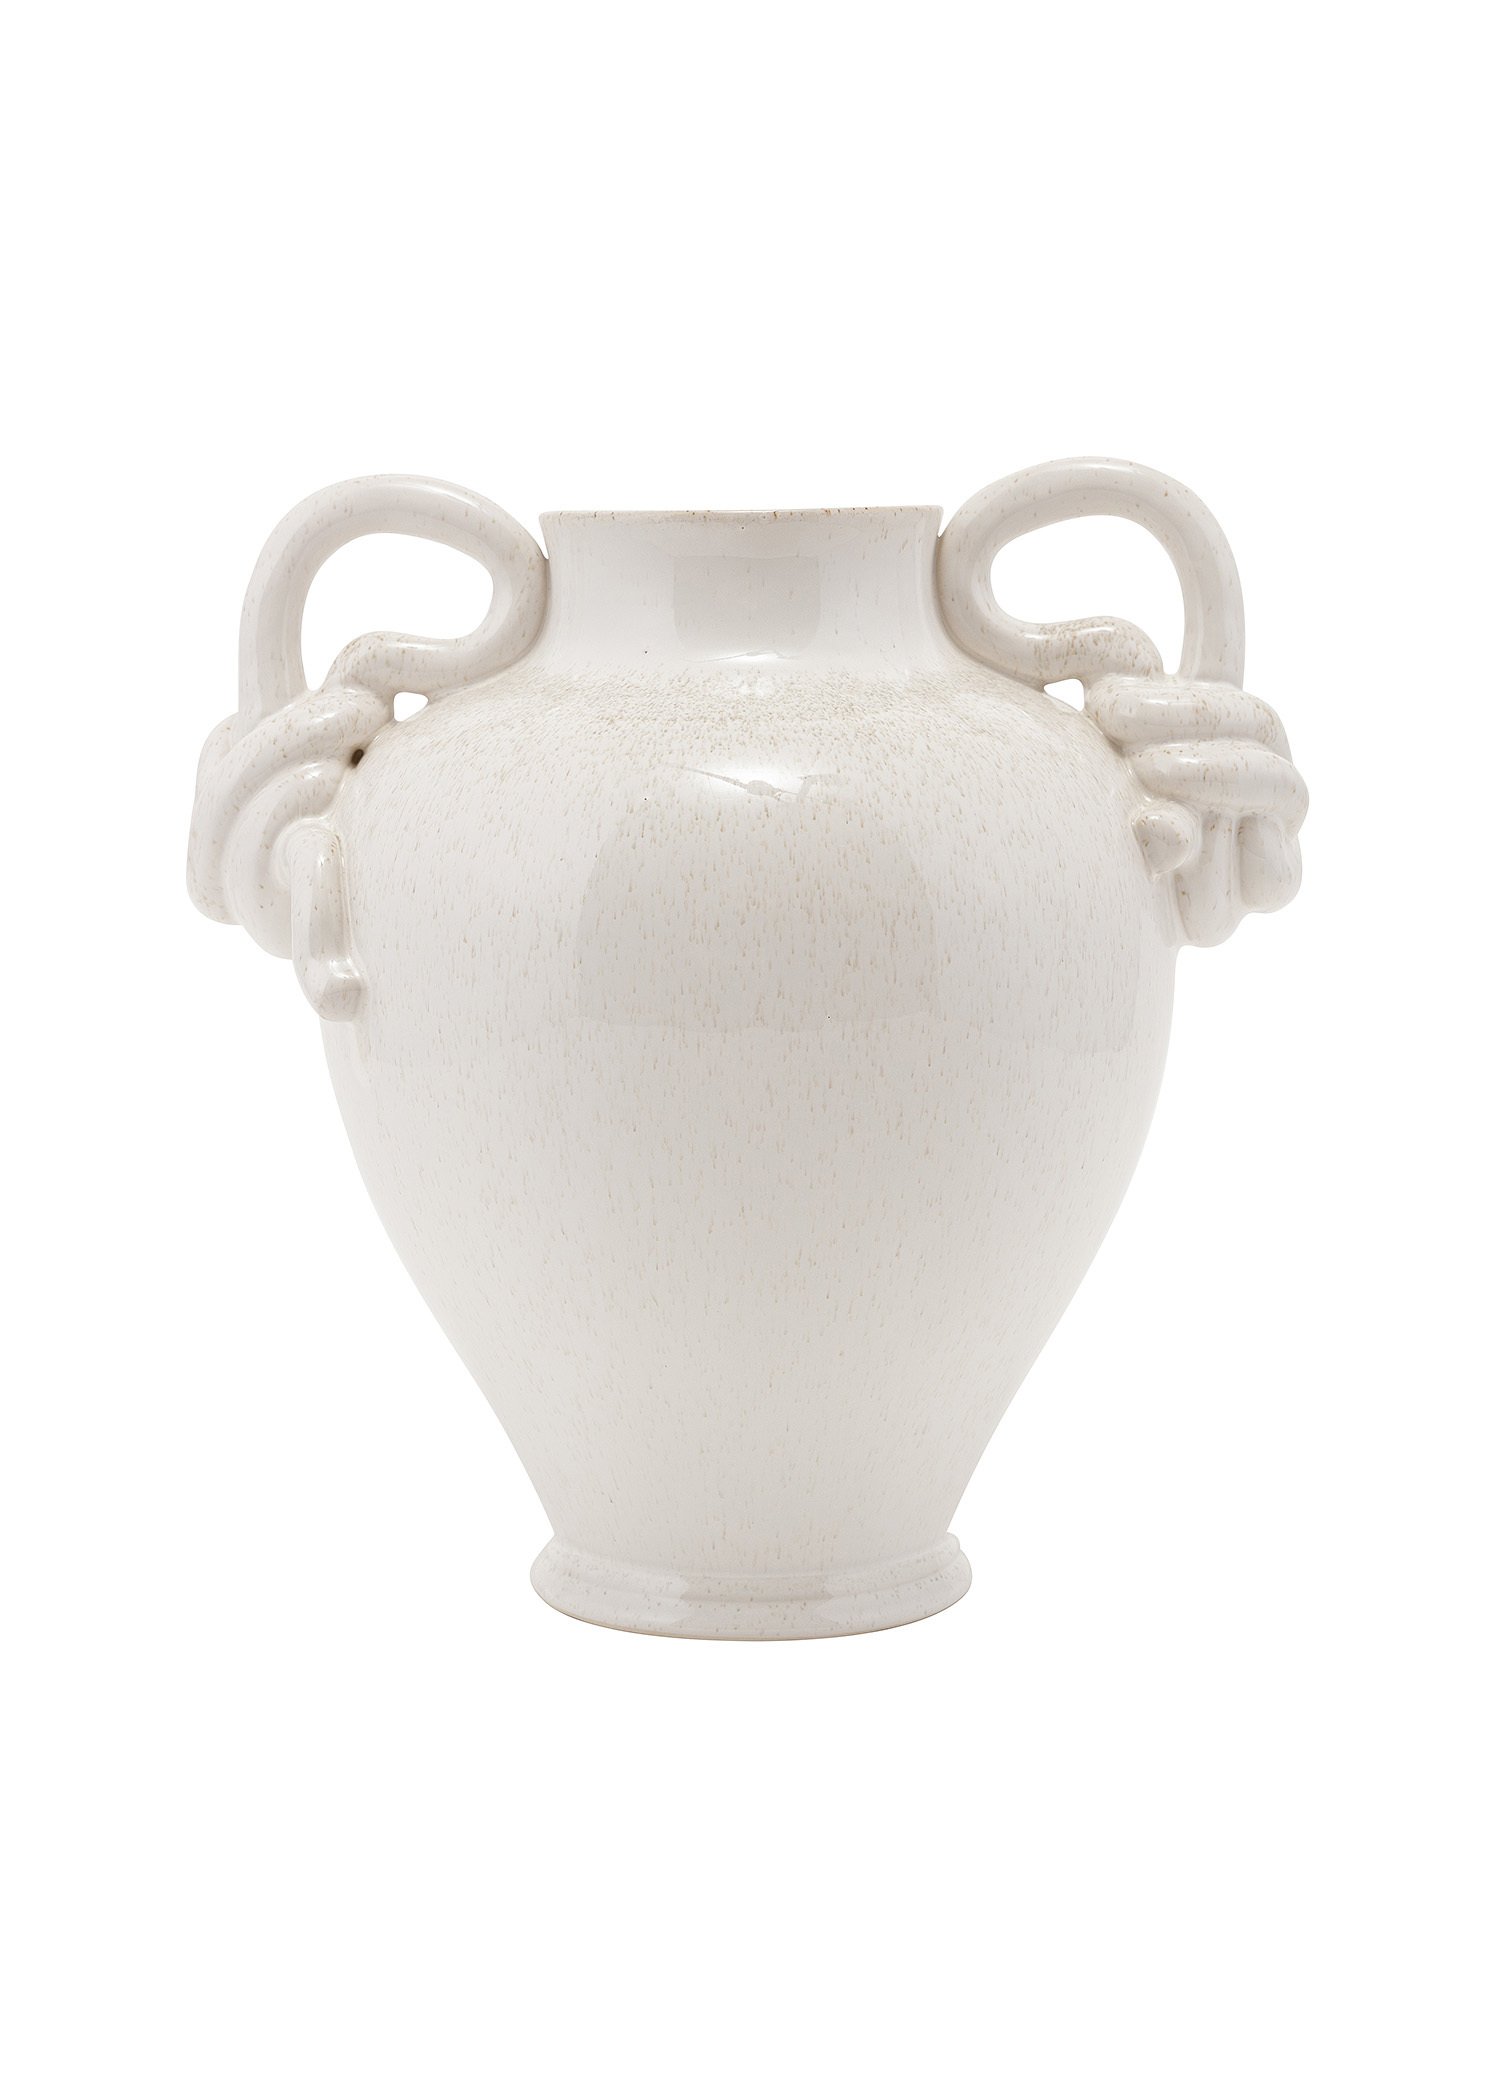 White stoneware vas